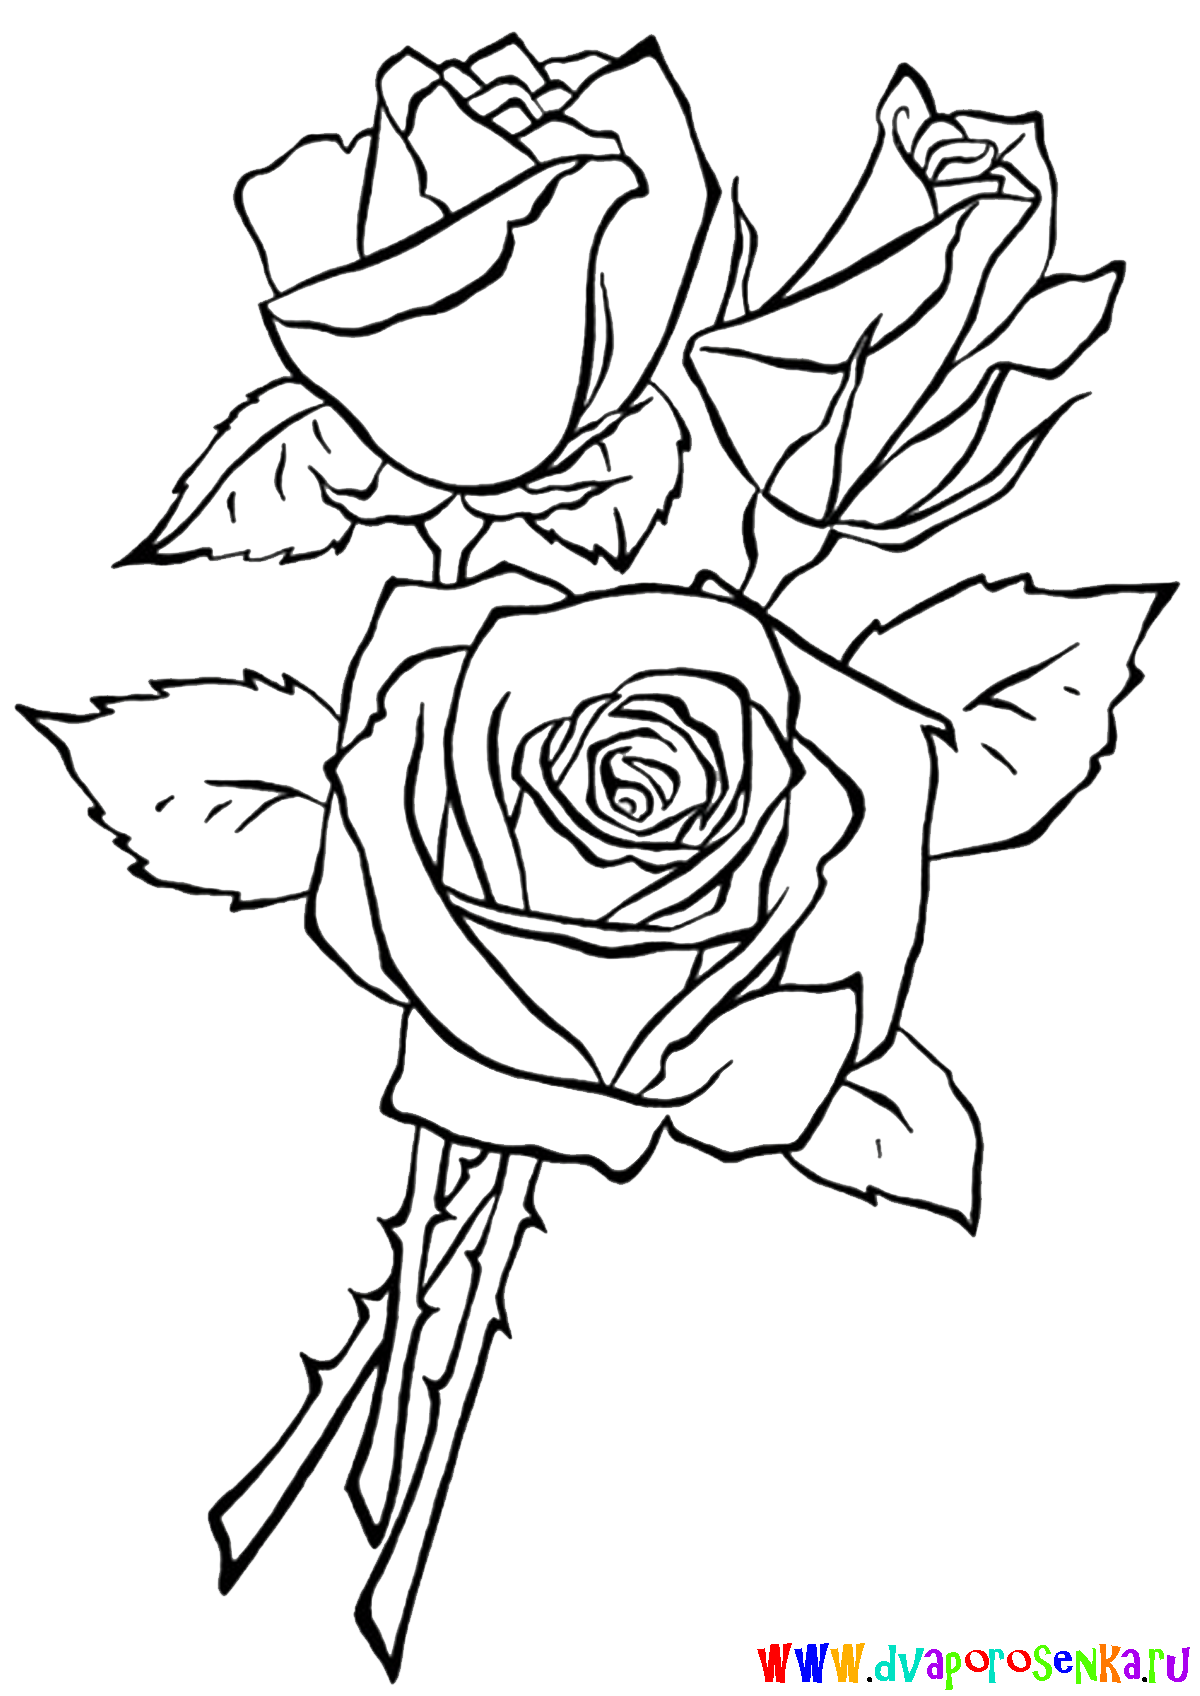 Розы. Раскраски с розами. Раскраски на тему розы.            Розы. Раскраски для детей на тему розы. Раскраски на тему окружающий мир для детей. Раскраски с розами, раскраски розы, скачать раскраски с розами.                    